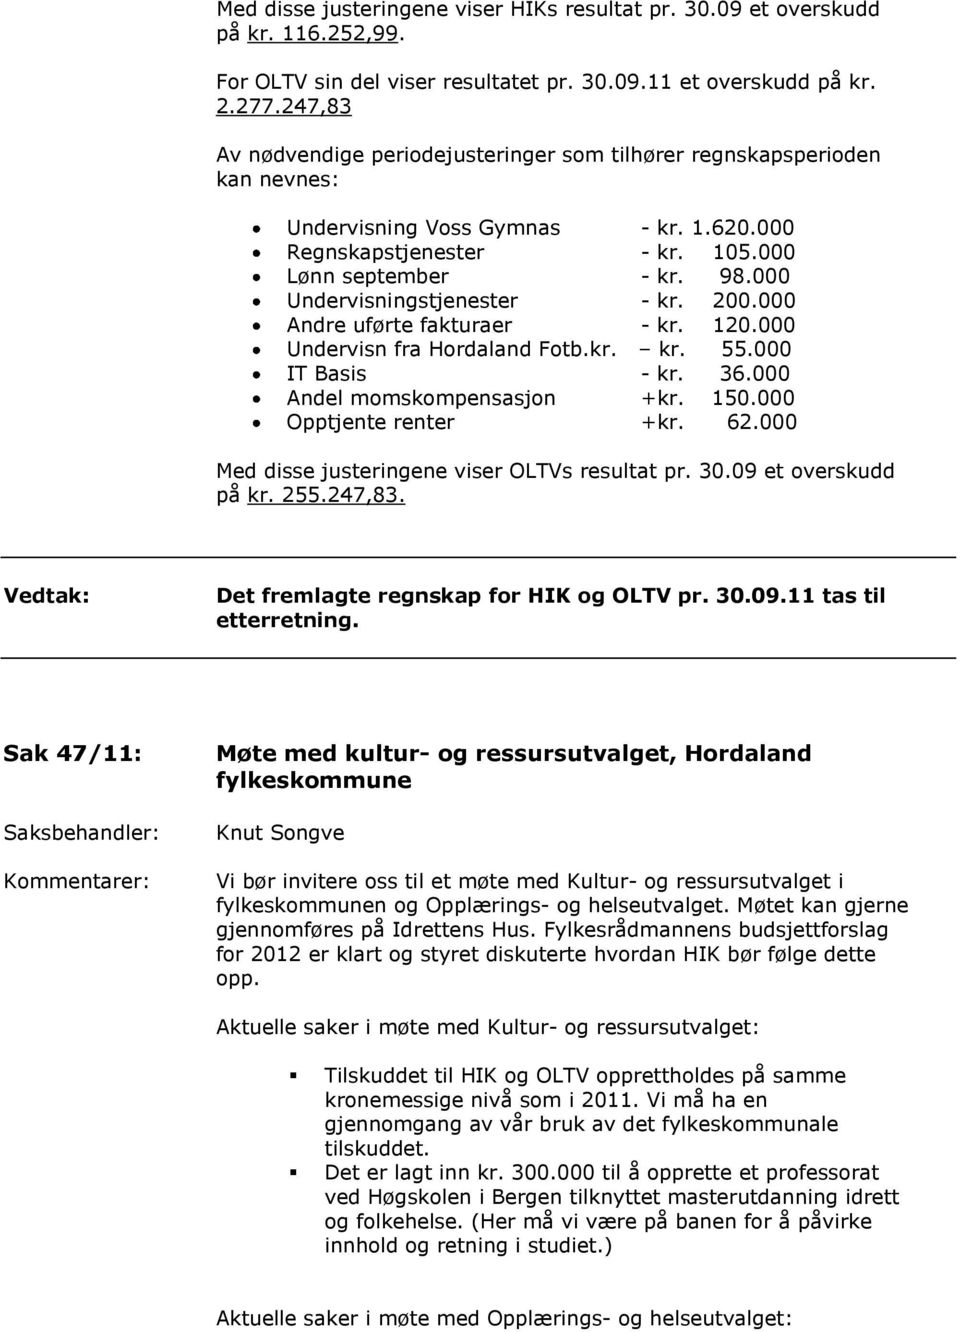 000 Undervisningstjenester - kr. 200.000 Andre uførte fakturaer - kr. 120.000 Undervisn fra Hordaland Fotb.kr. kr. 55.000 IT Basis - kr. 36.000 Andel momskompensasjon +kr. 150.